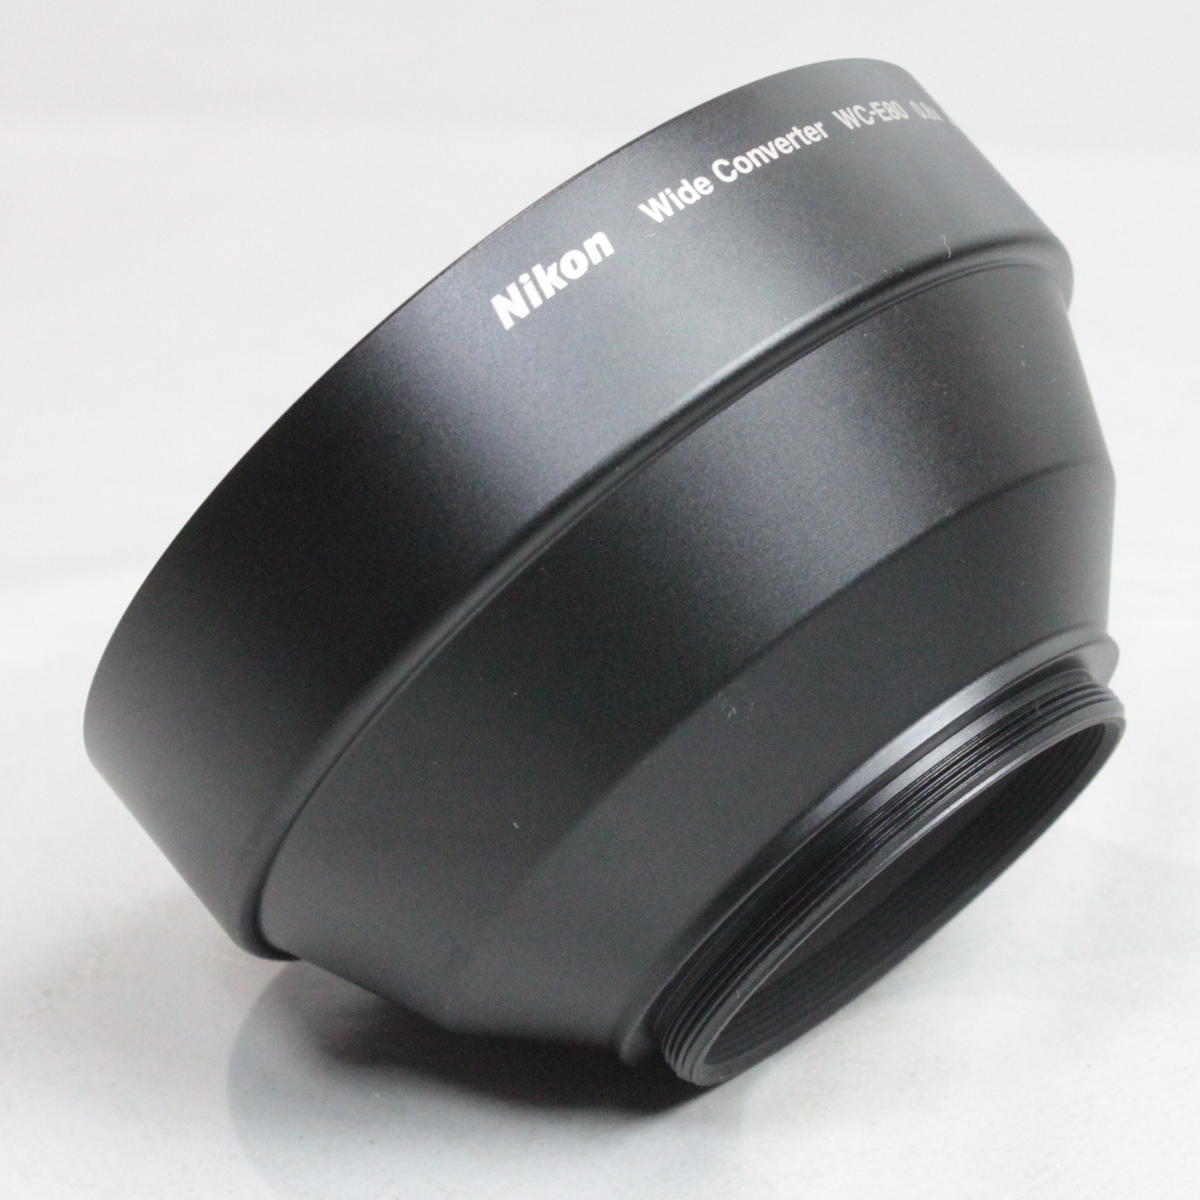 040439 [ прекрасный товар Nikon ] Nikon WC-E80 0.8x широкий конвертер 